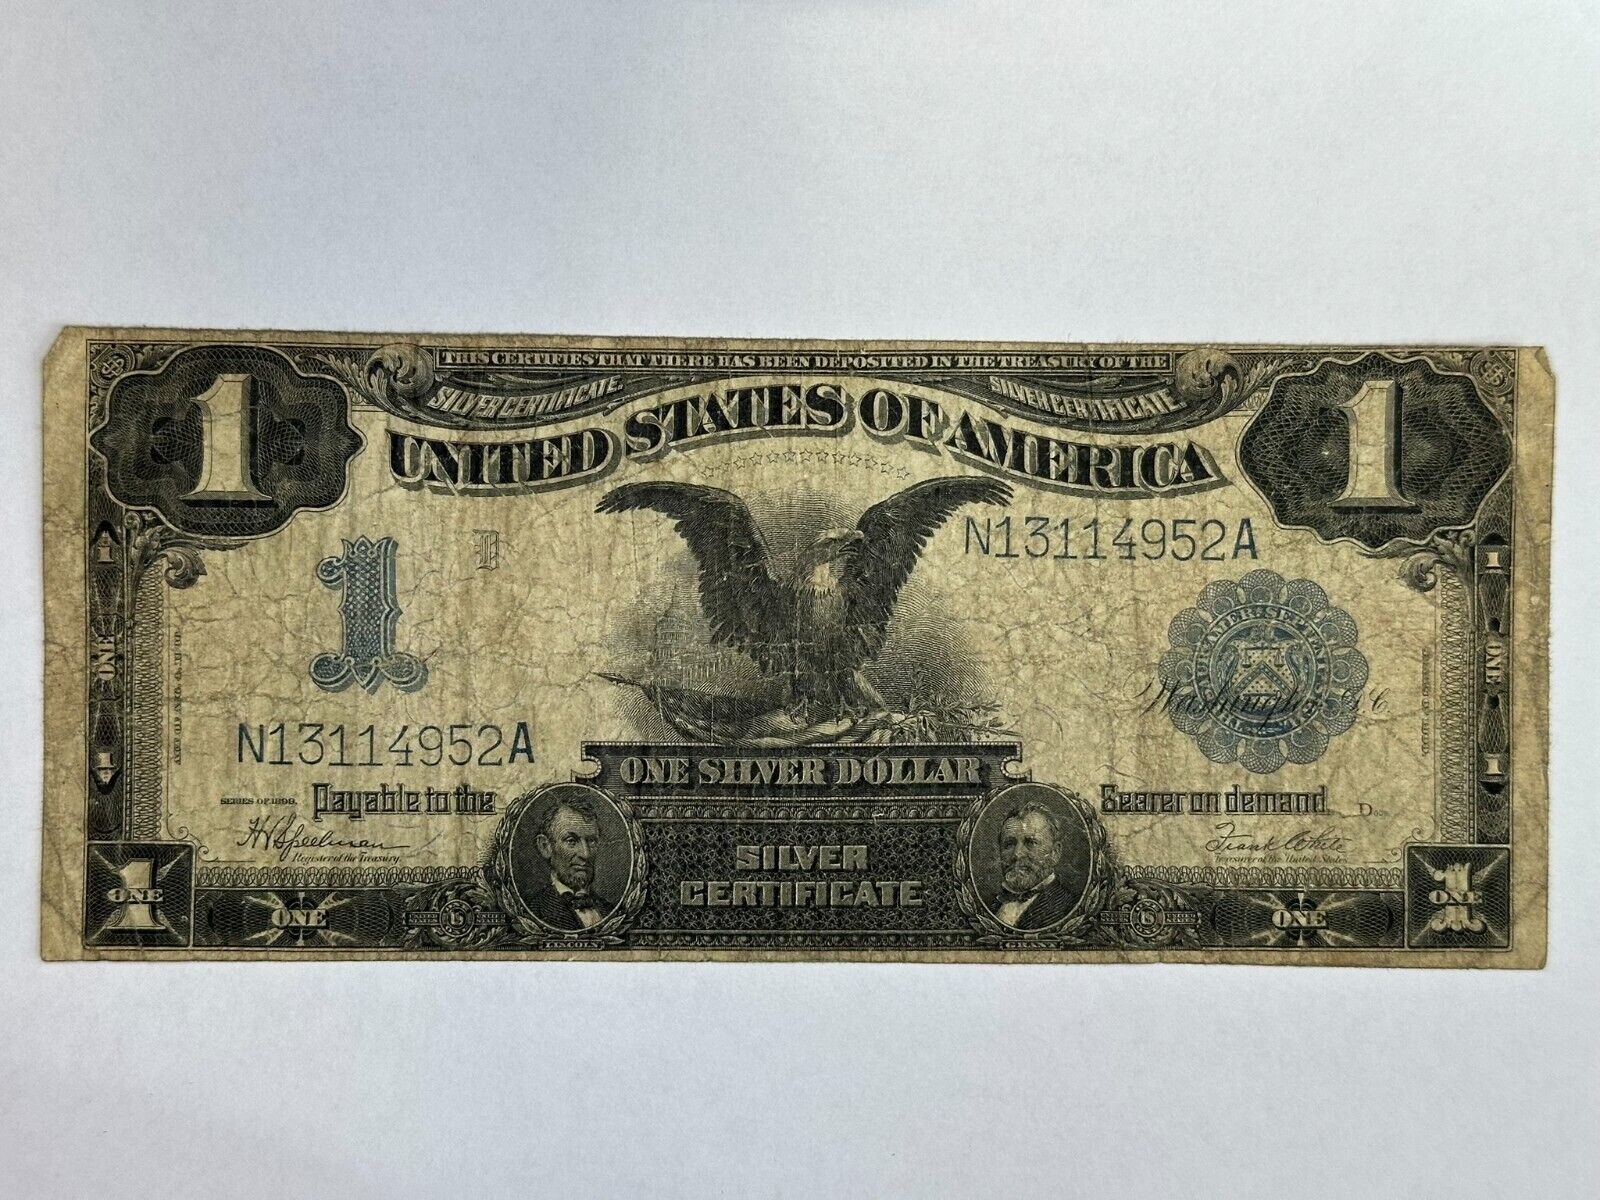 1899 1 silver certificate Black Eagle large note $1 dollar Fr. 236 (Item #1081)